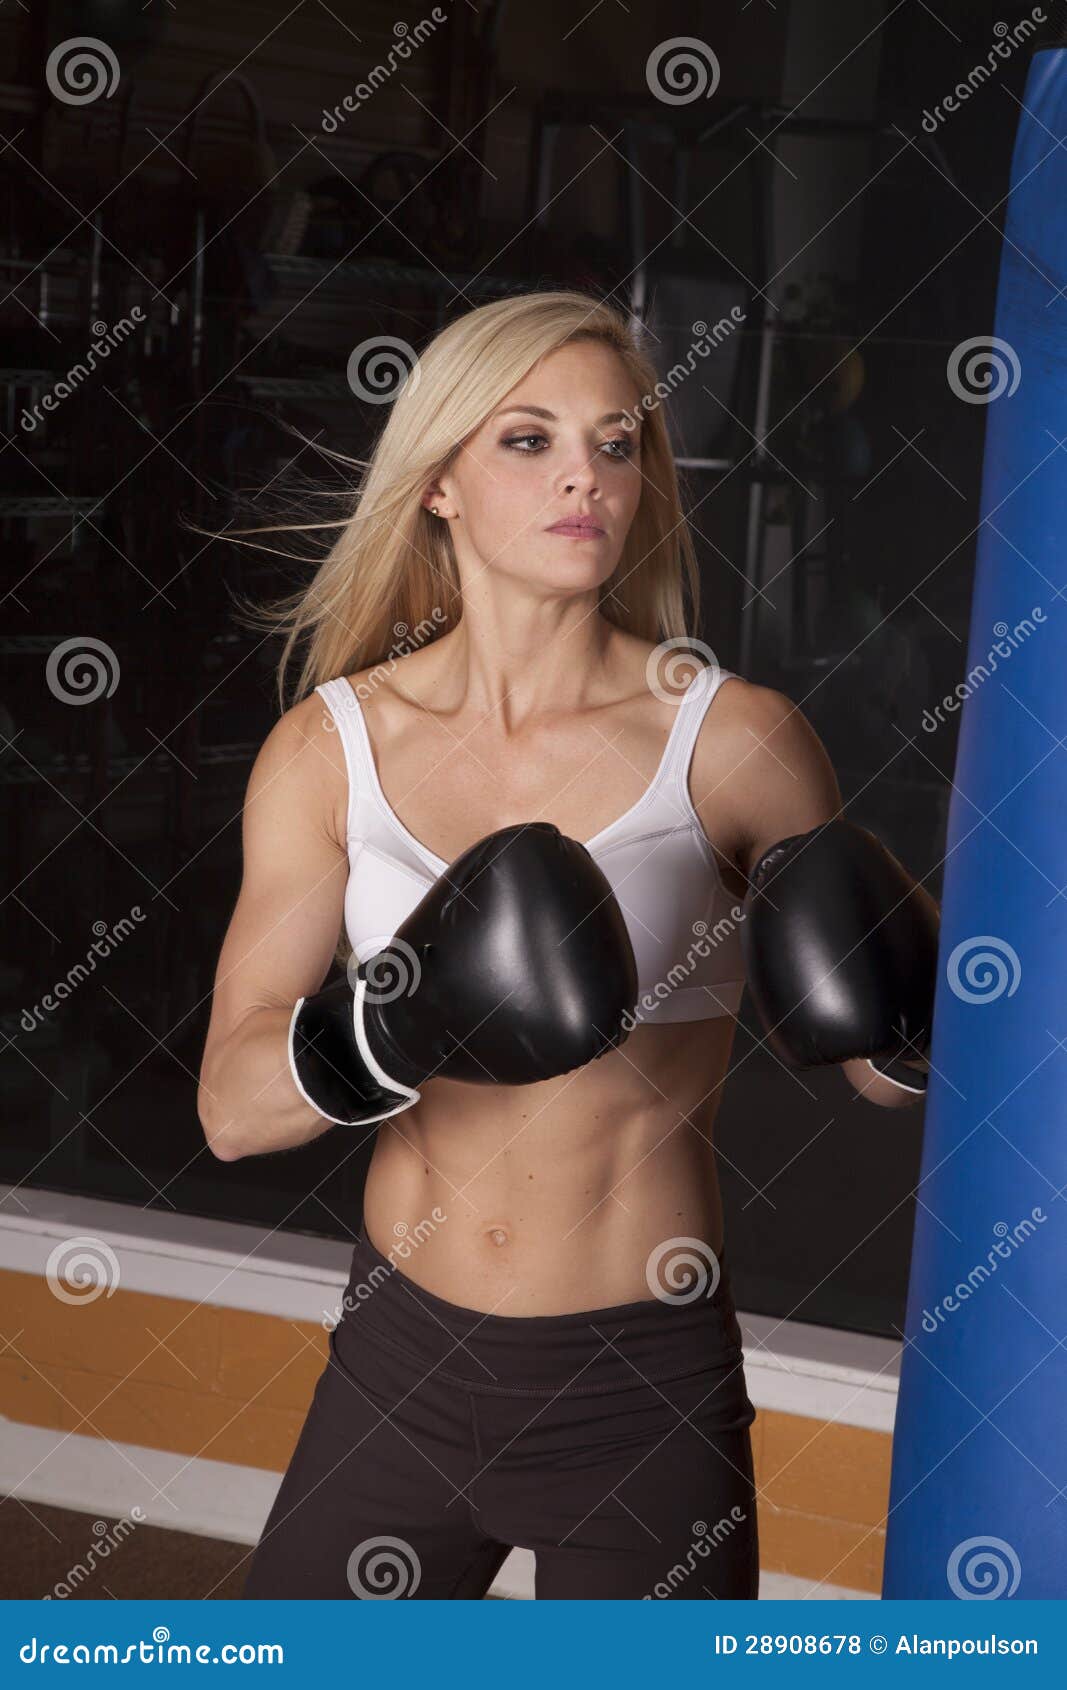 https://thumbs.dreamstime.com/z/woman-white-sports-bra-box-28908678.jpg